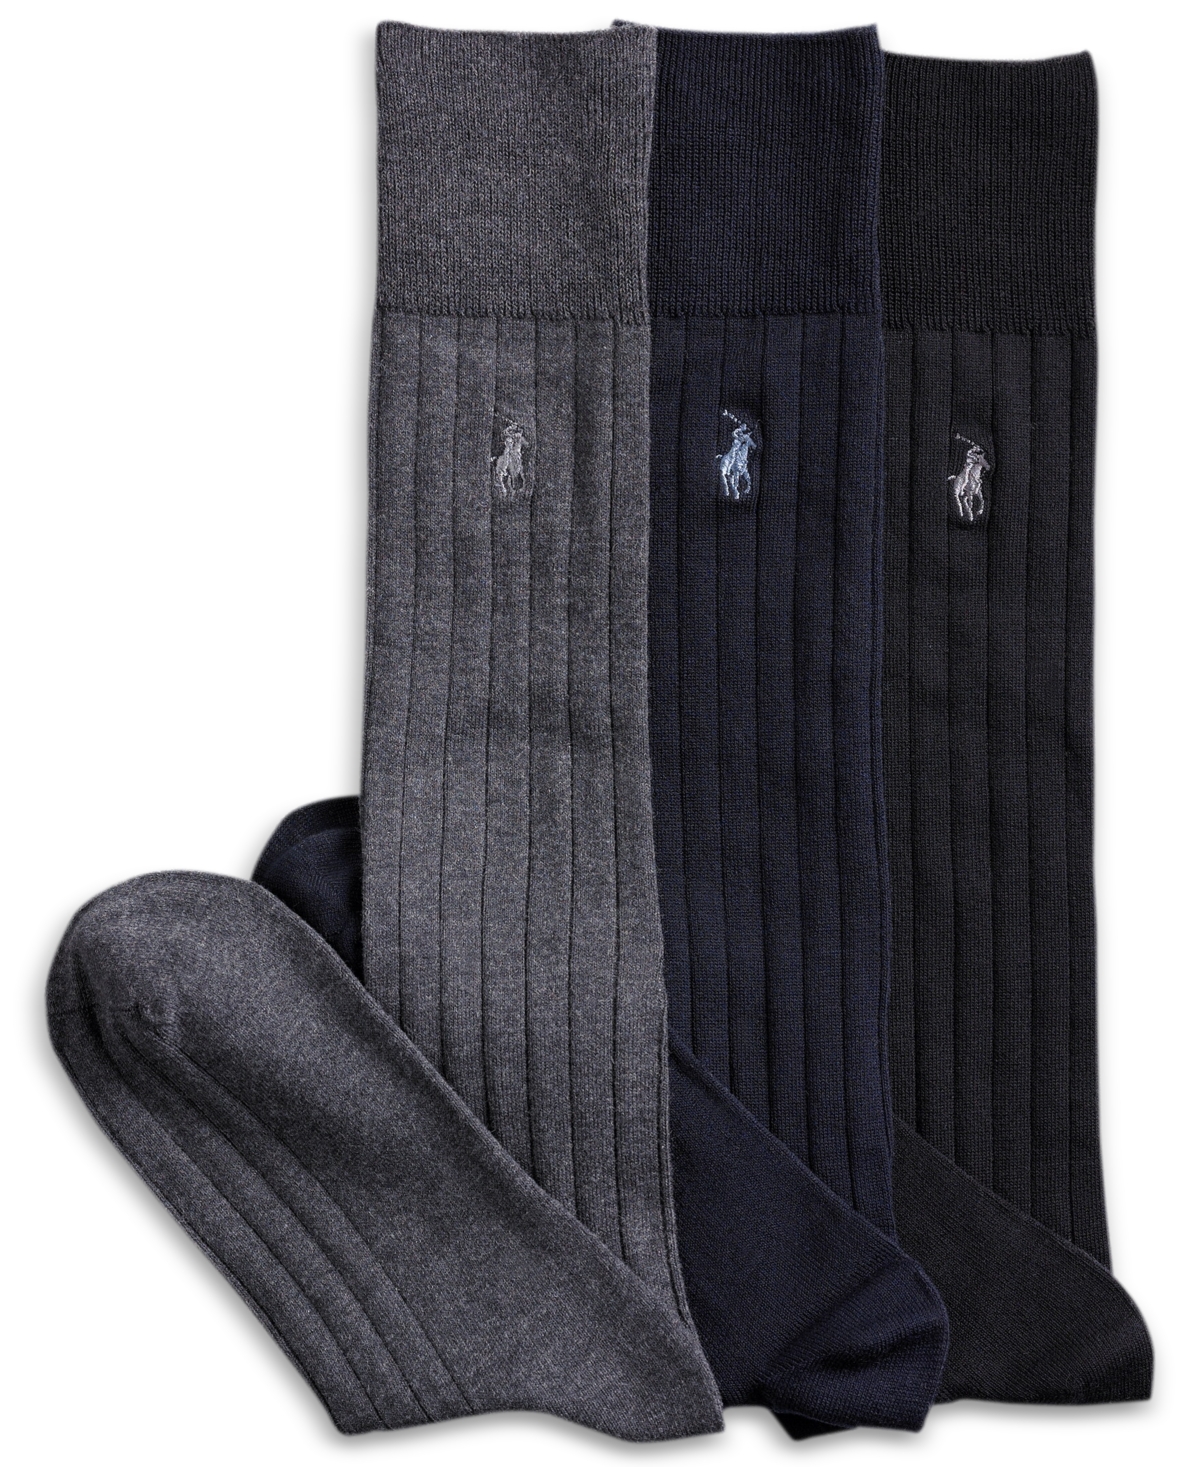 Polo Ralph Lauren 3 Pack Over the Calf Dress Men's Socks & Reviews -  Underwear & Socks - Men - Macy's